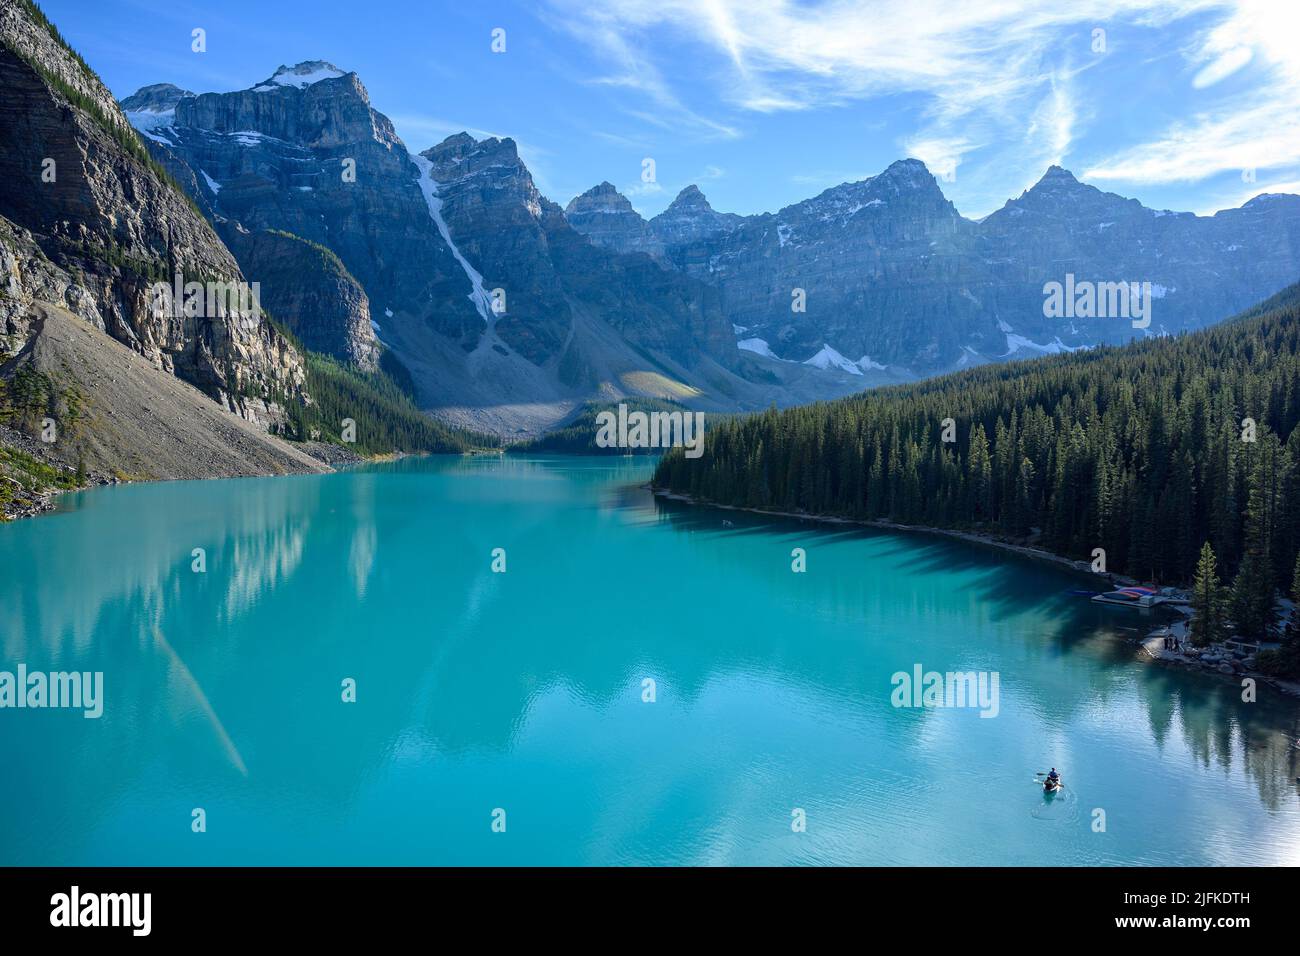 El Lago Moraine es un lago alimentado por glaciares situado en el Valle de los Diez Picos en el Parque Nacional Banff, Alberta, Canadá. Foto de stock